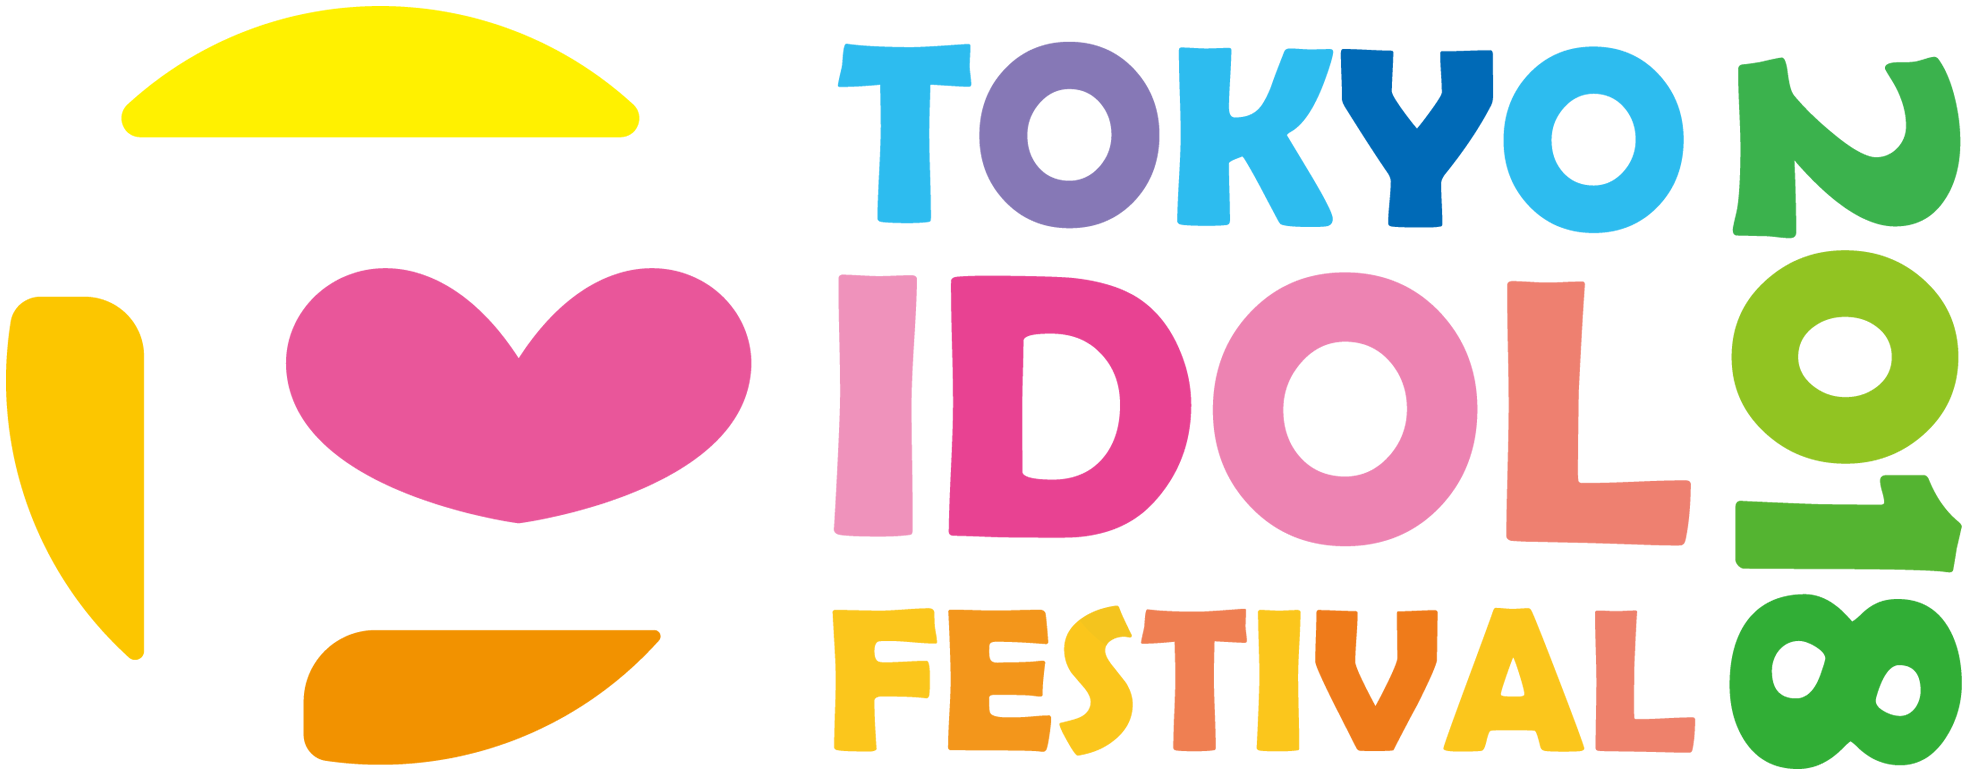 TOKYO IDOL FESTIVAL 2018